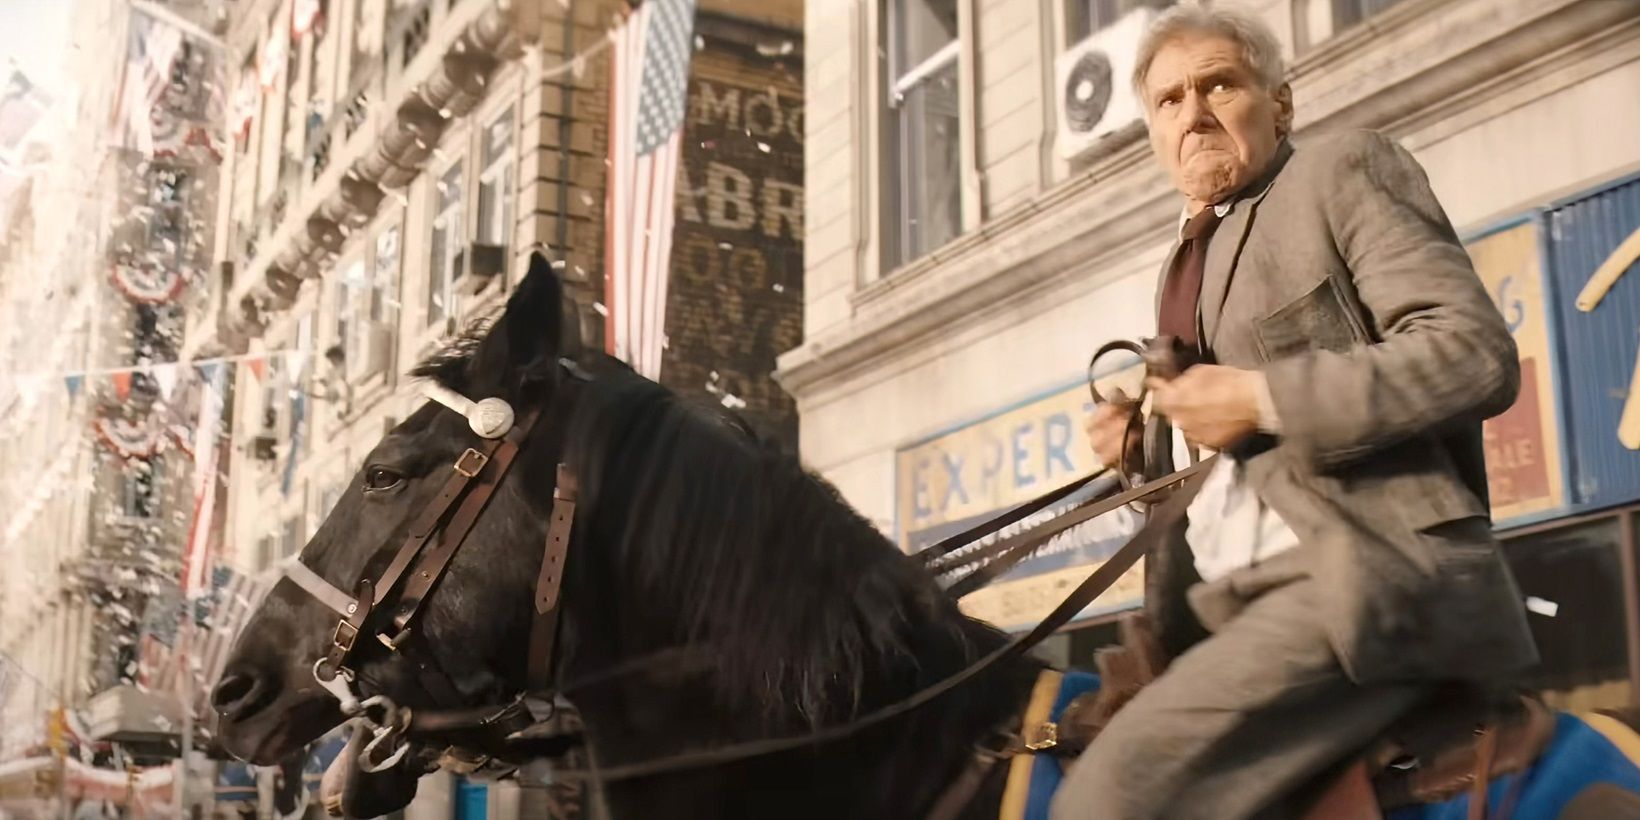 Indy monta a caballo durante un desfile en Indiana Jones y el dial del destino